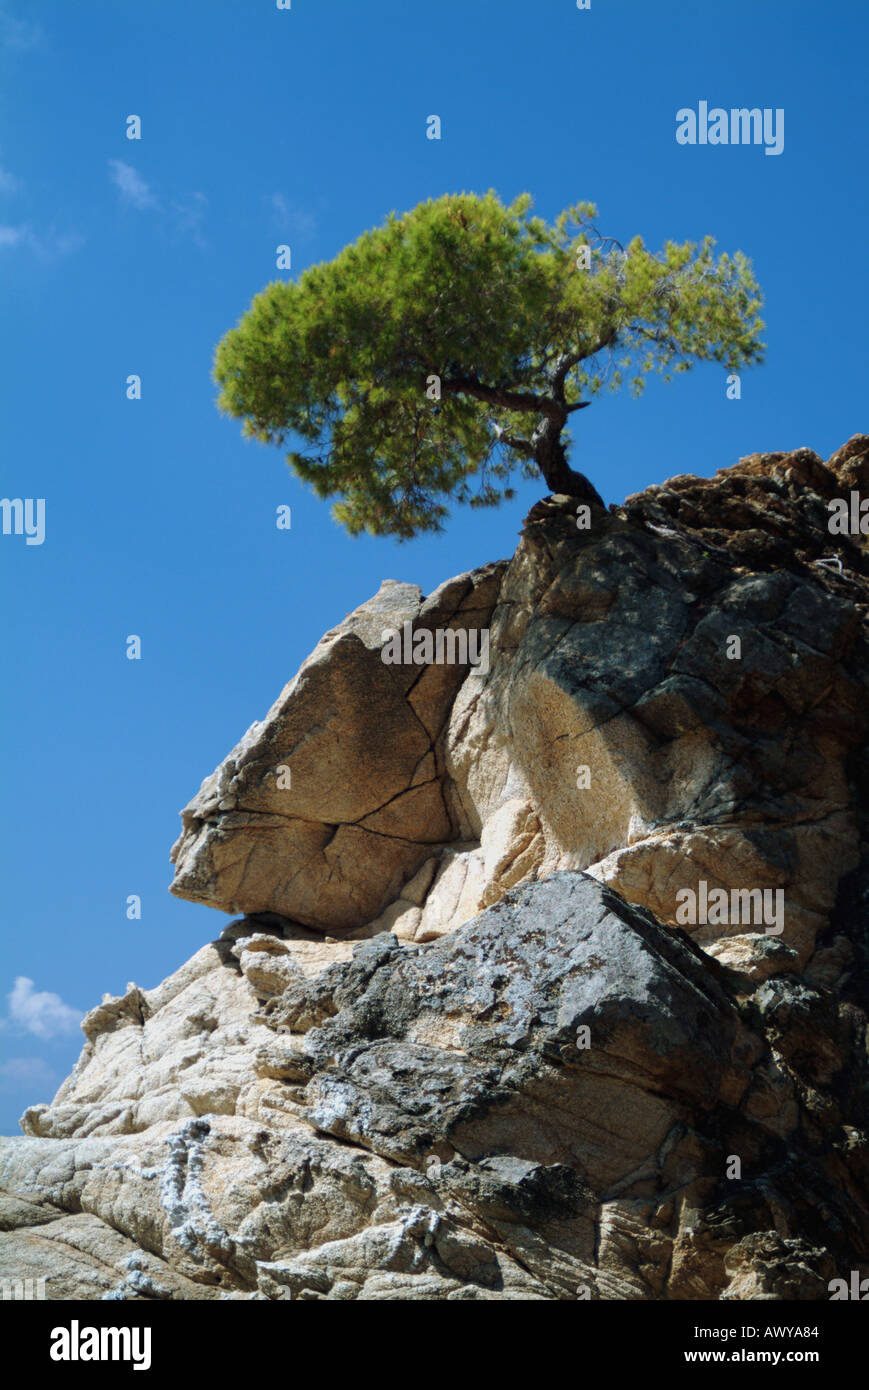 tree-clinging-to-cliff-kalamaki-beach-skiathos-greece-AWYA84.jpg